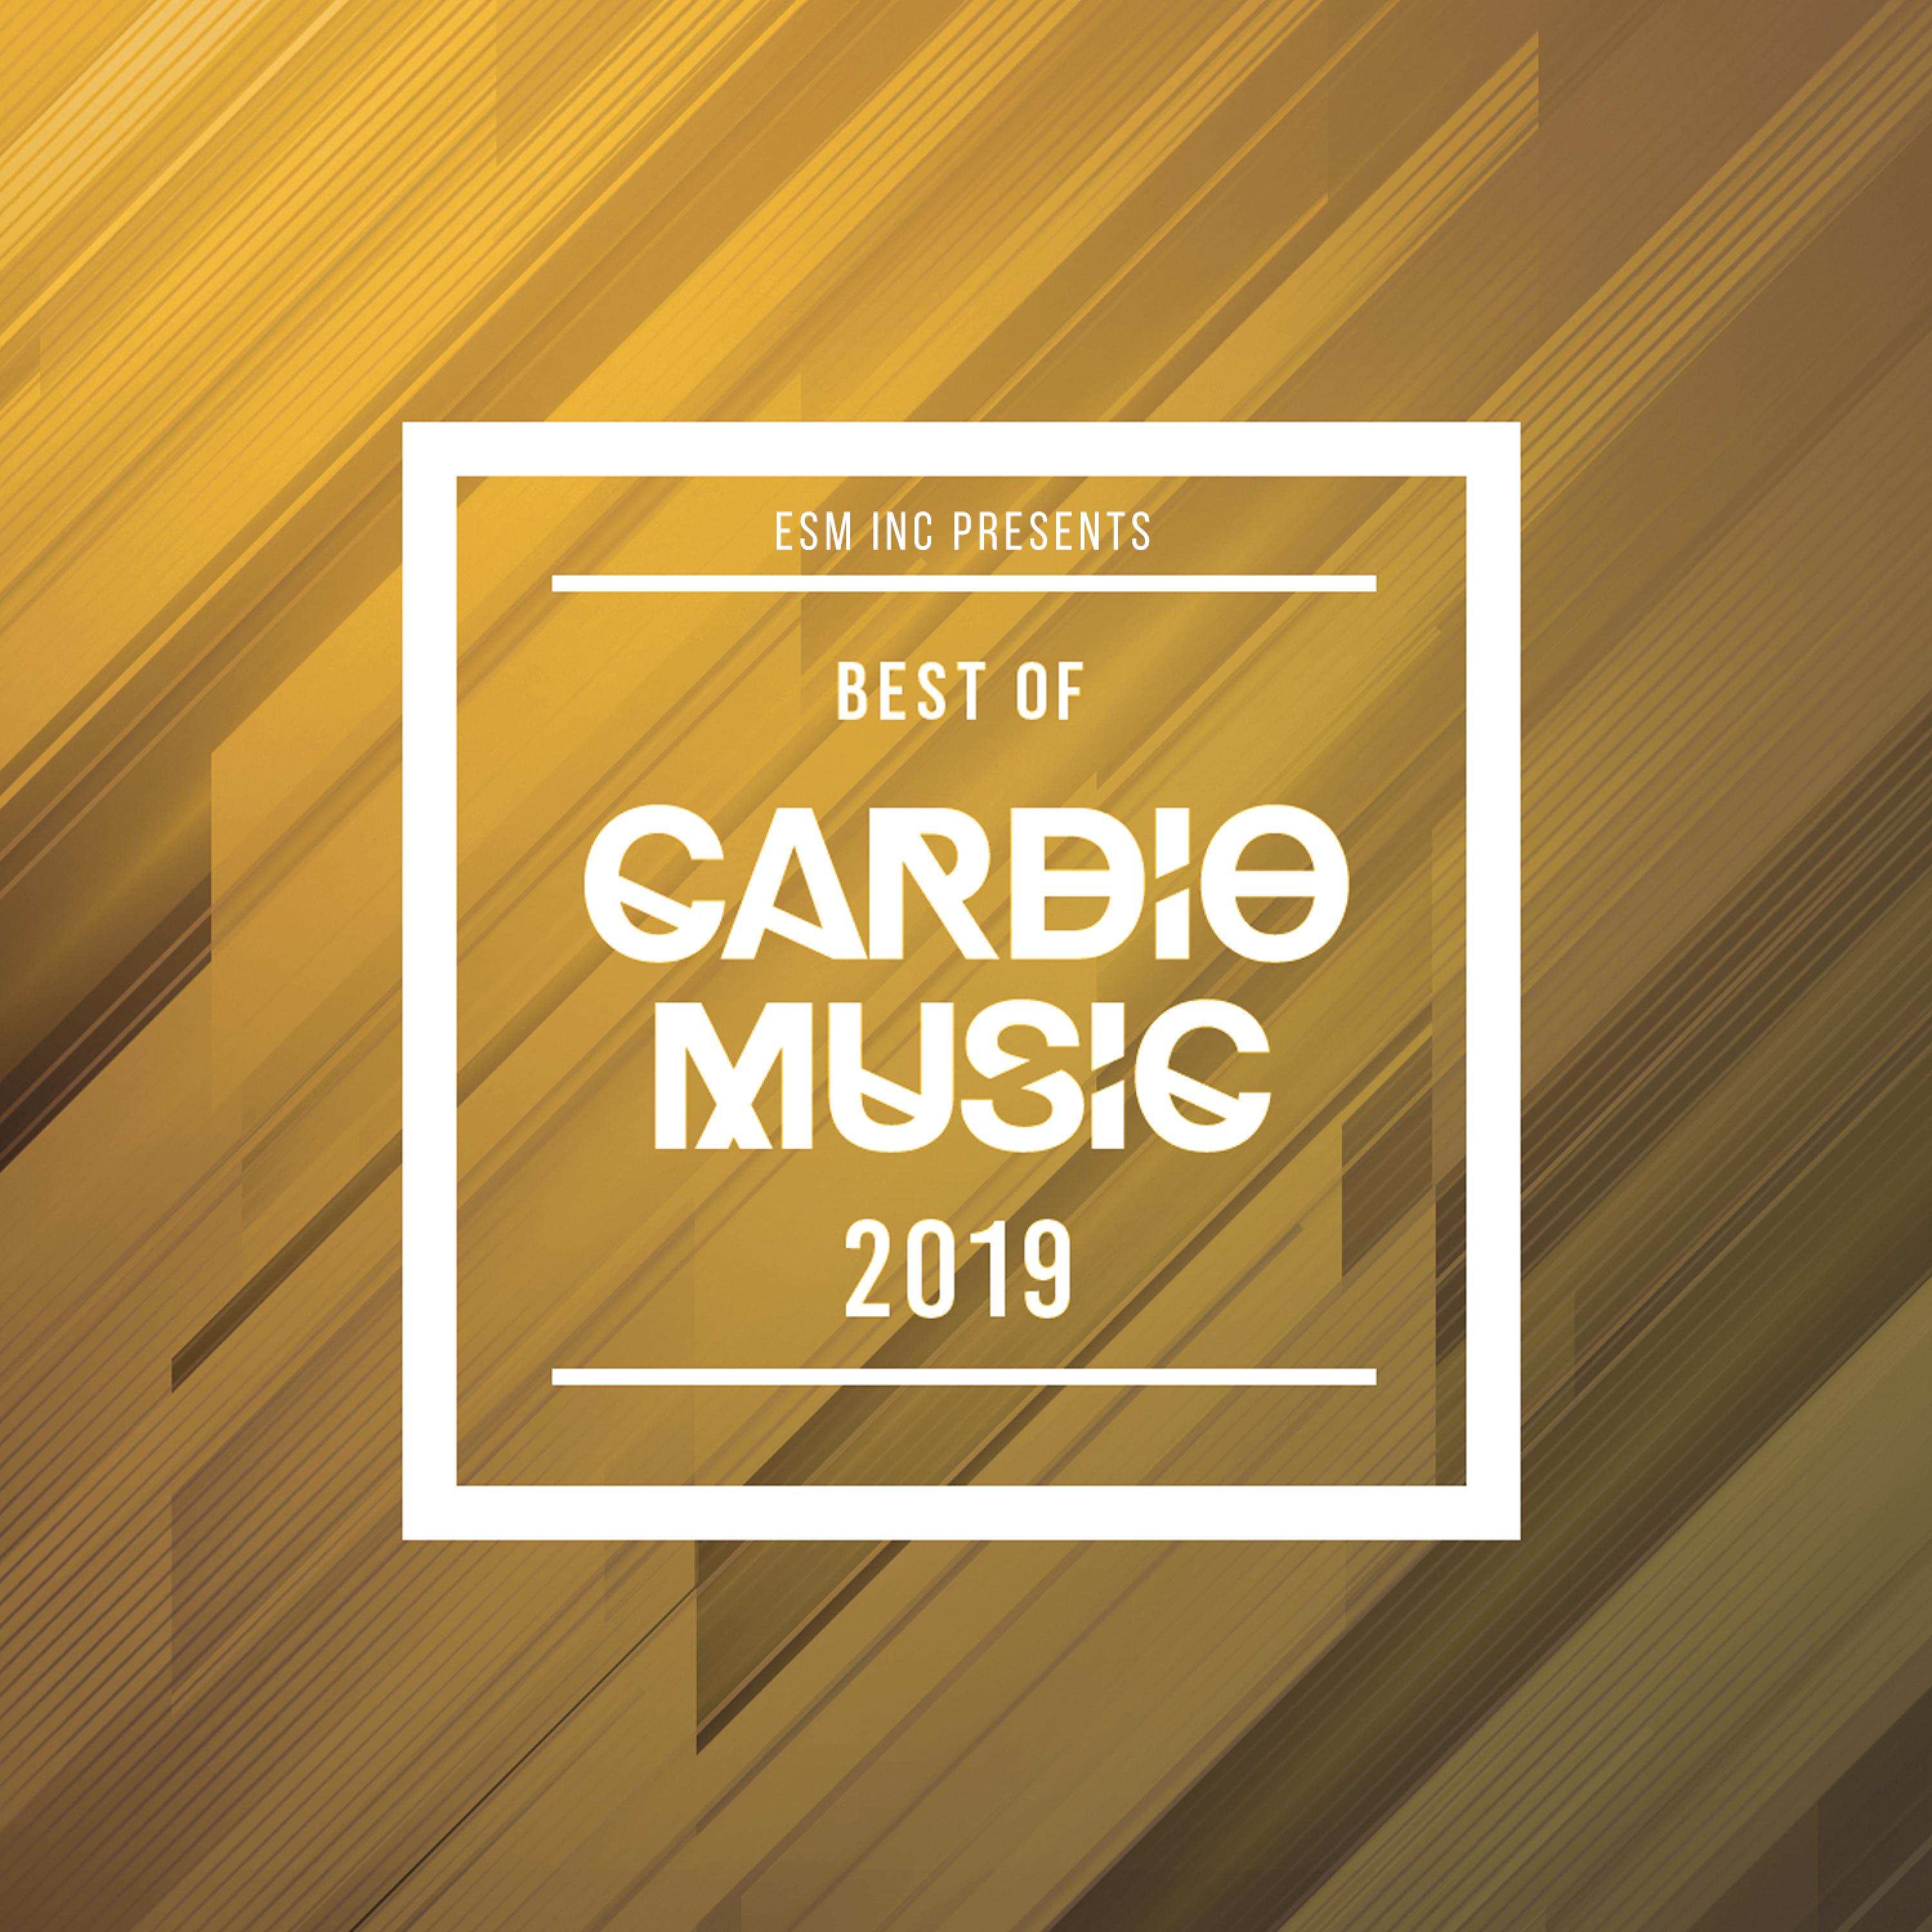 Best of Cardio Music 2019